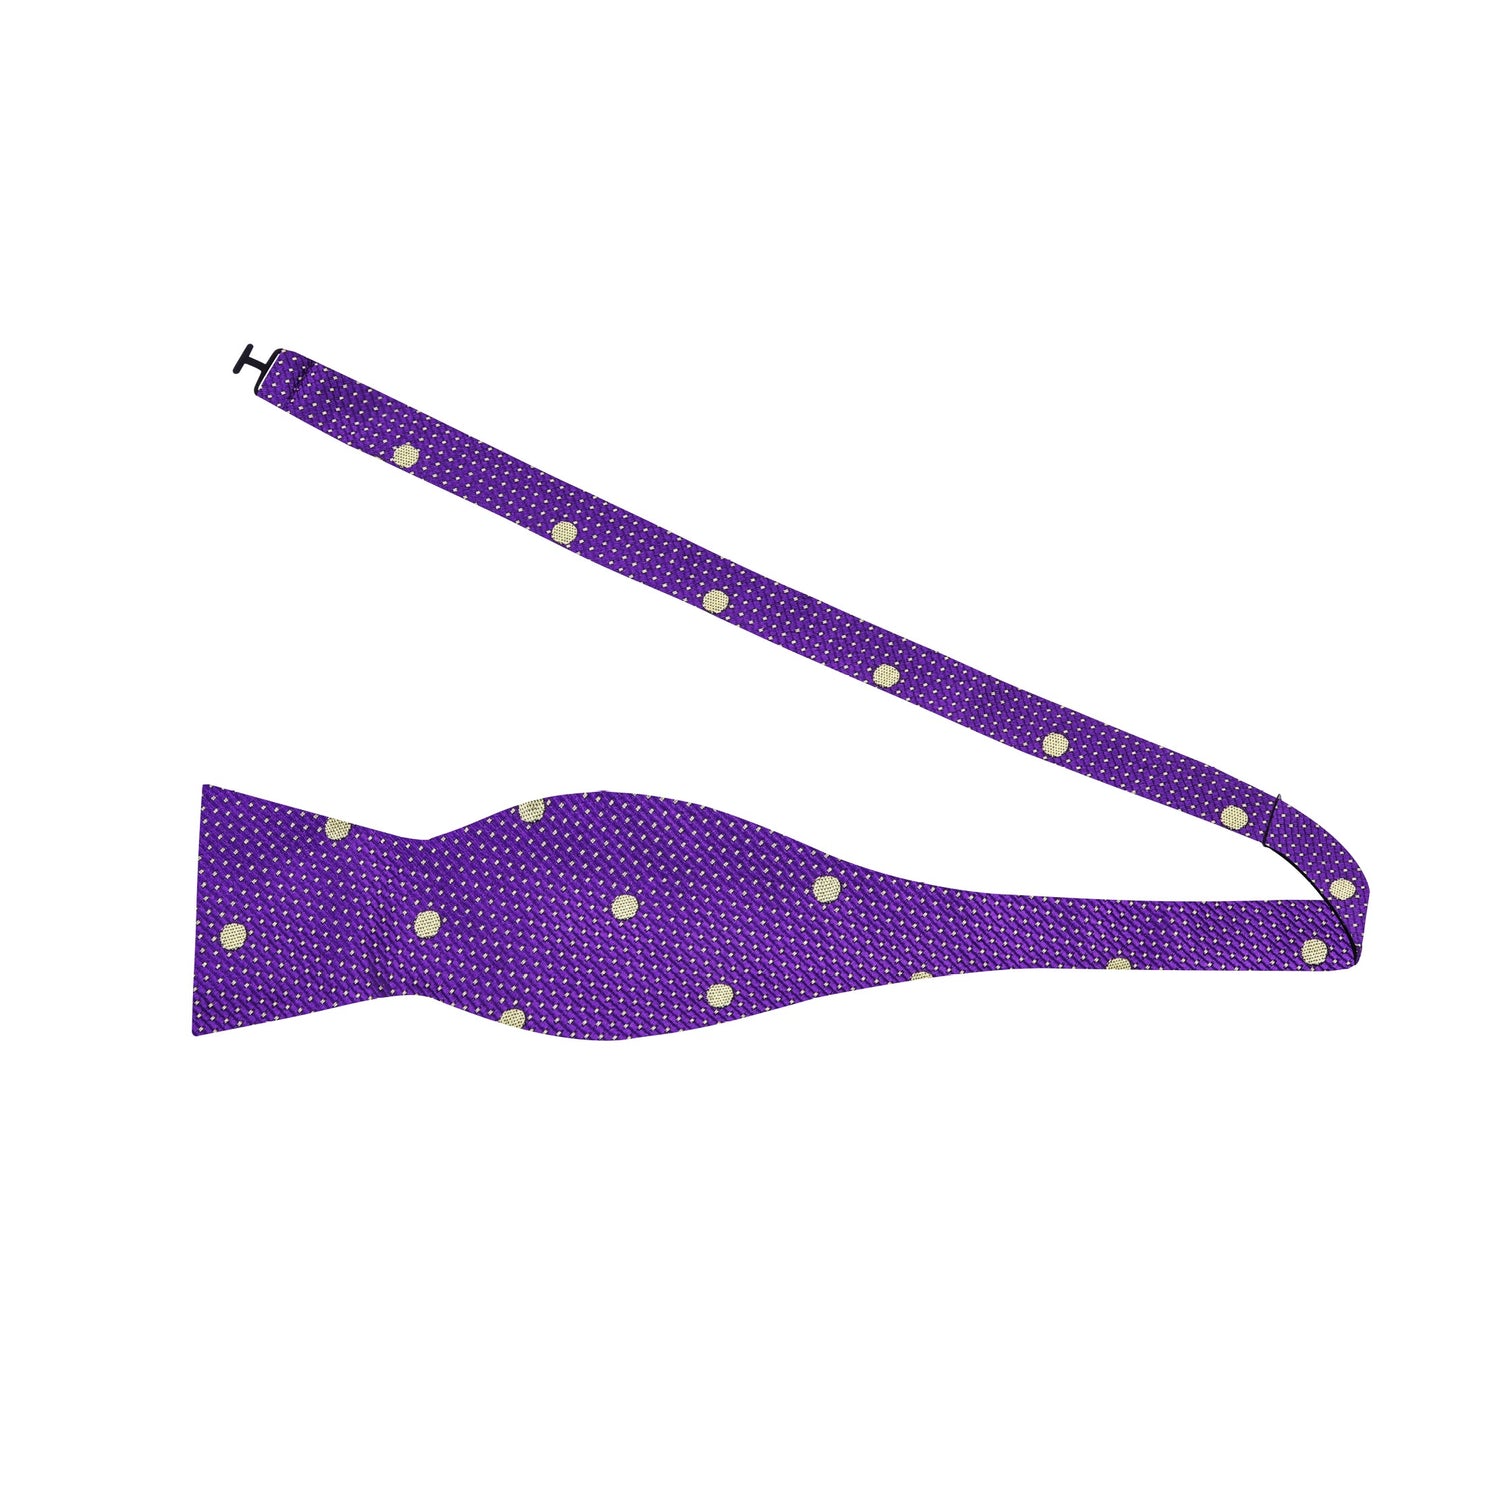 A Purple, Gold Polka Dot Pattern Self Tie Bow Tie Untied